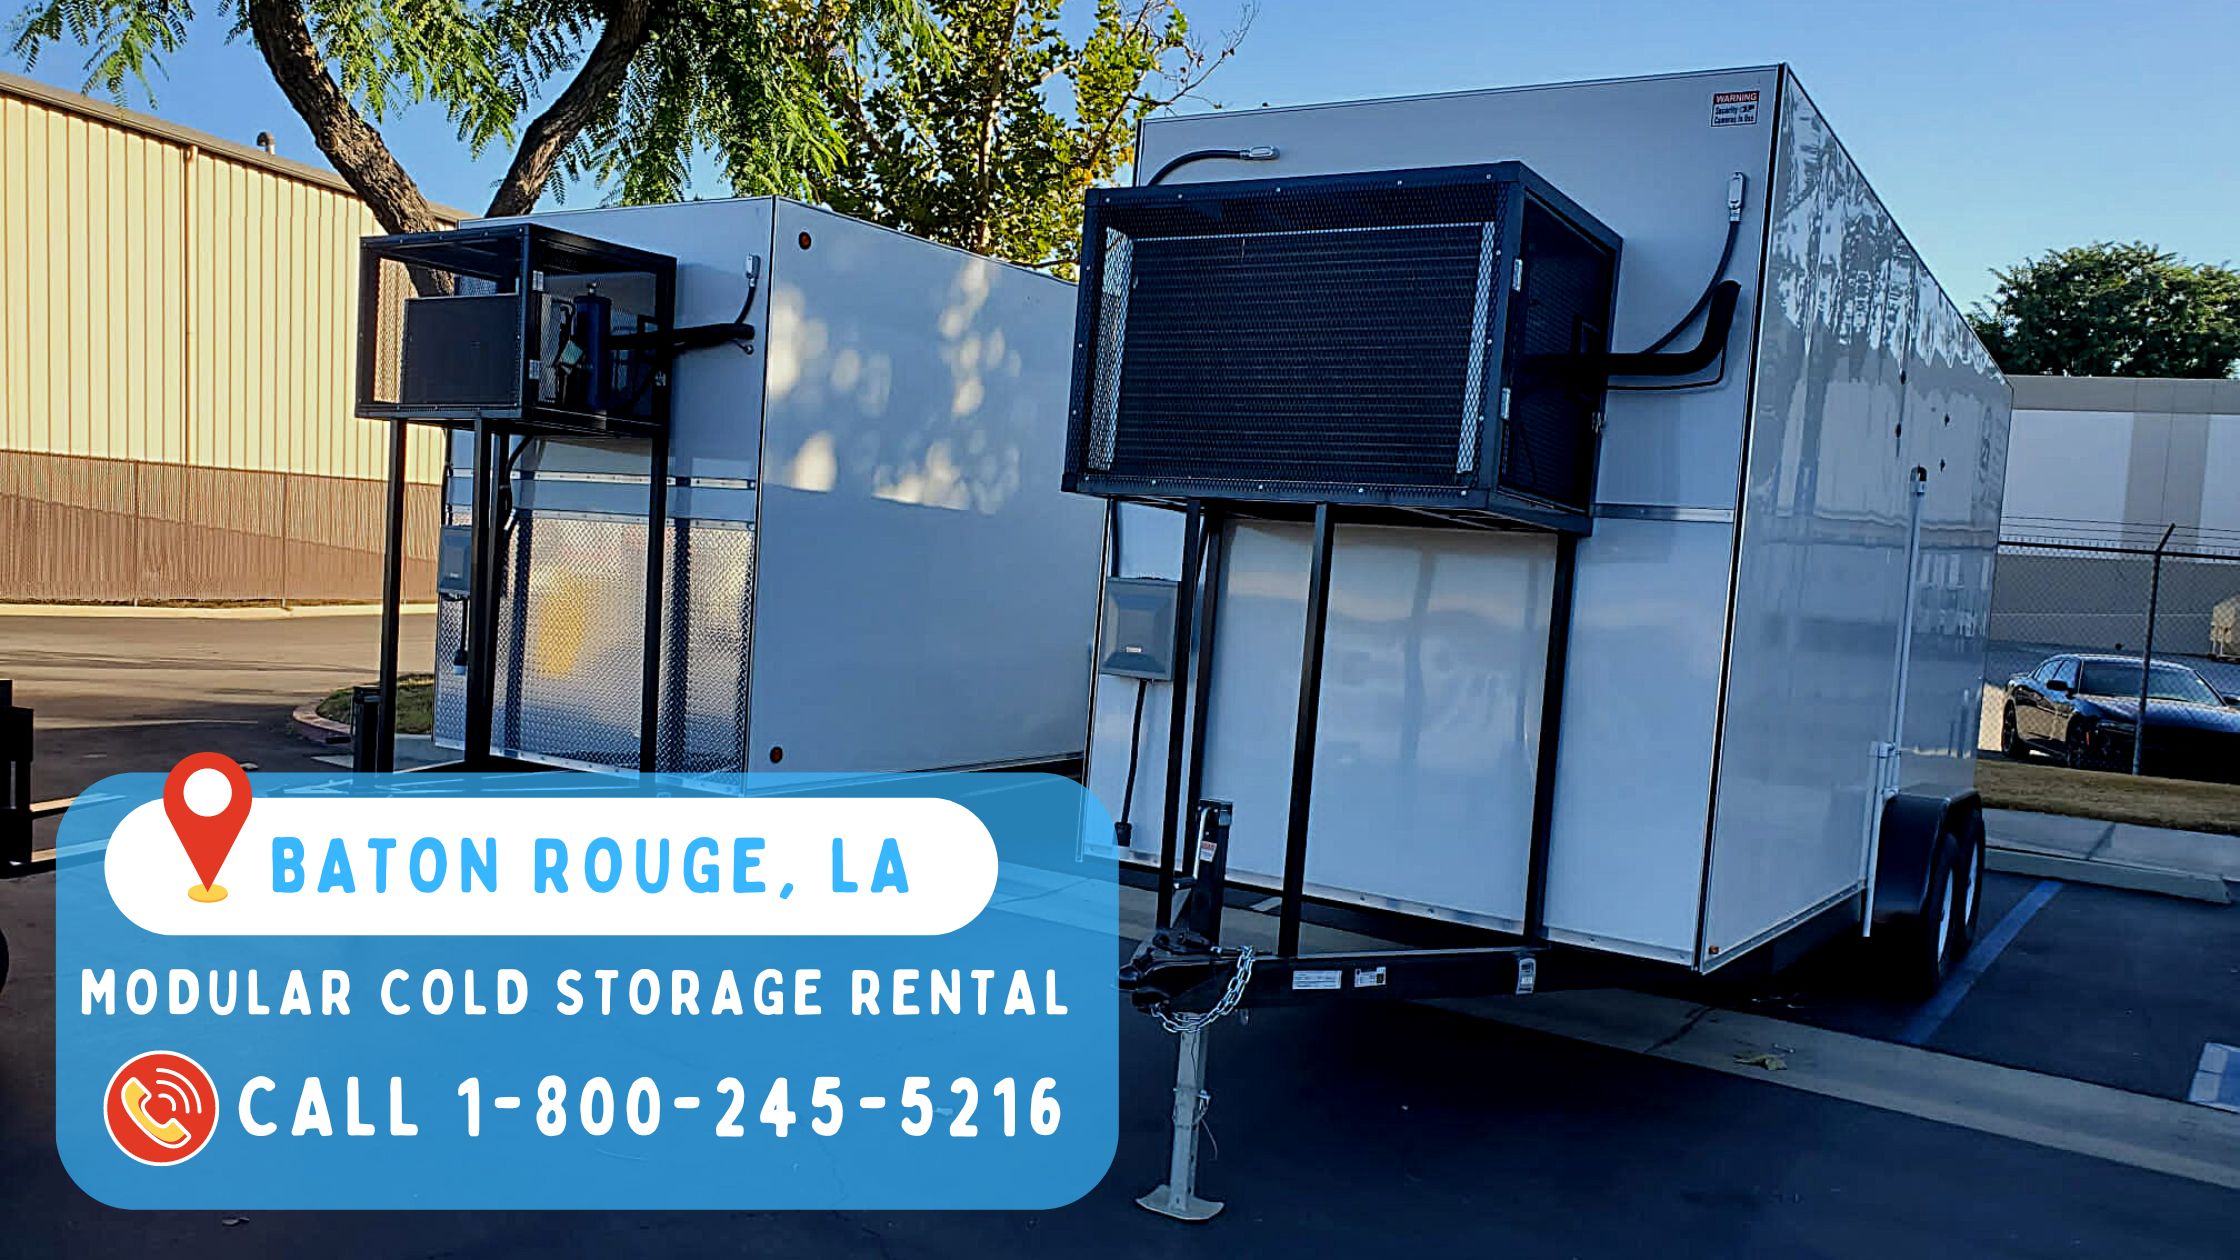 Modular cold storage rental in Baton Rouge